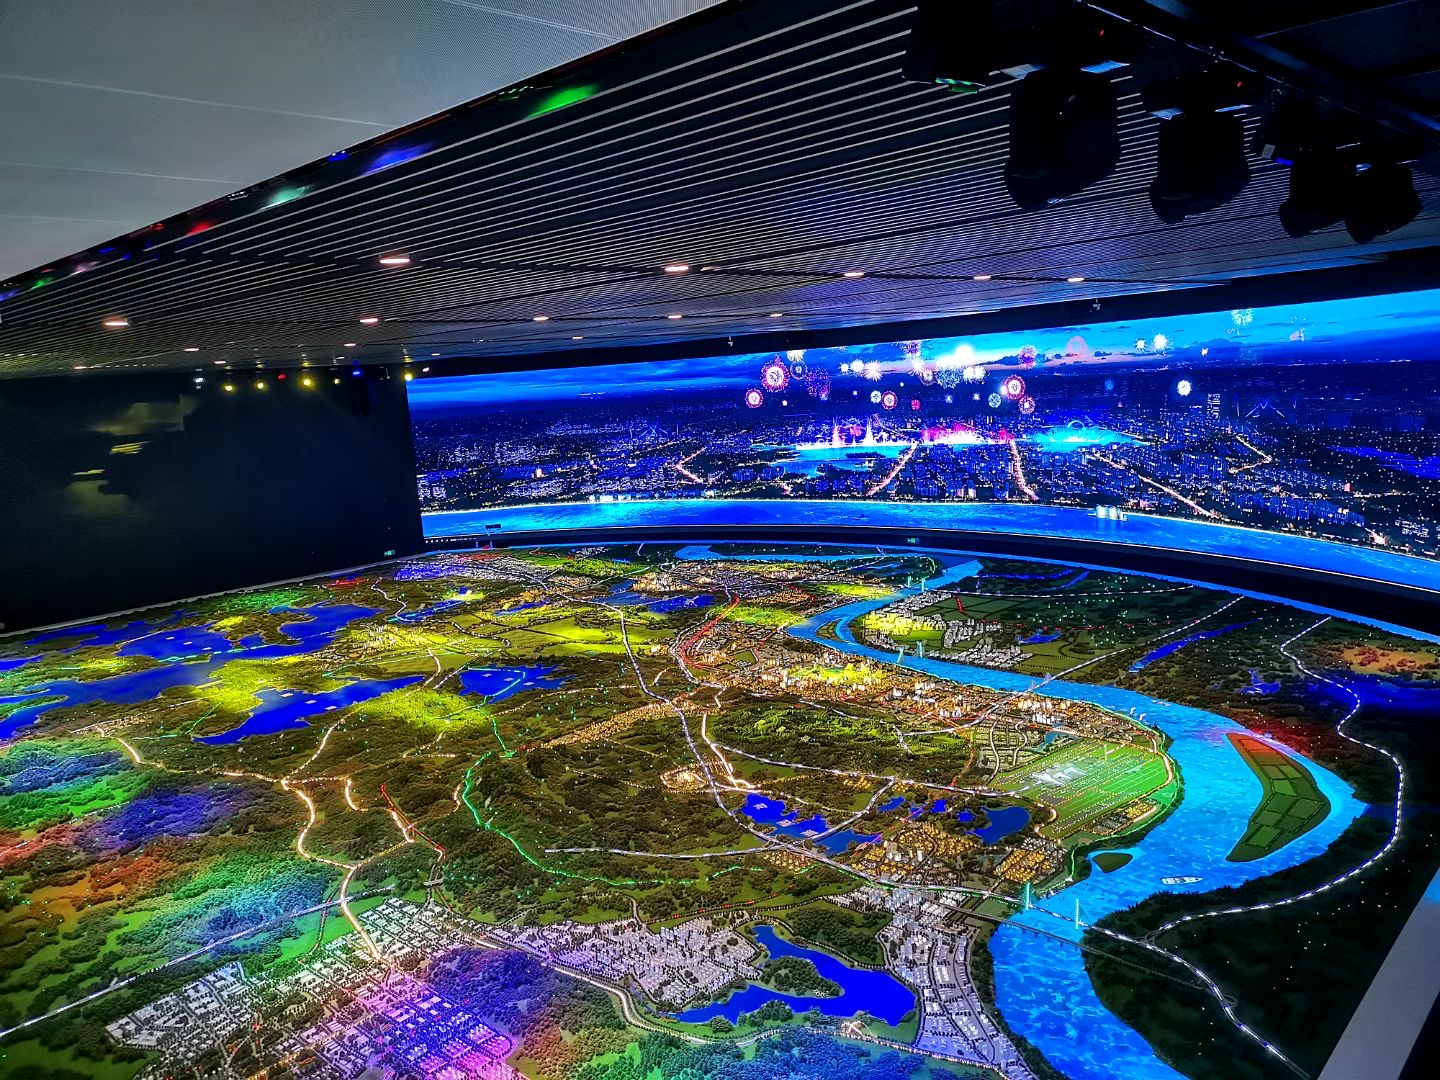 北京千境沙盘科技公司智慧城市沙盘模型设计要点讲解-北京千境科技沙盘模型公司大讲堂